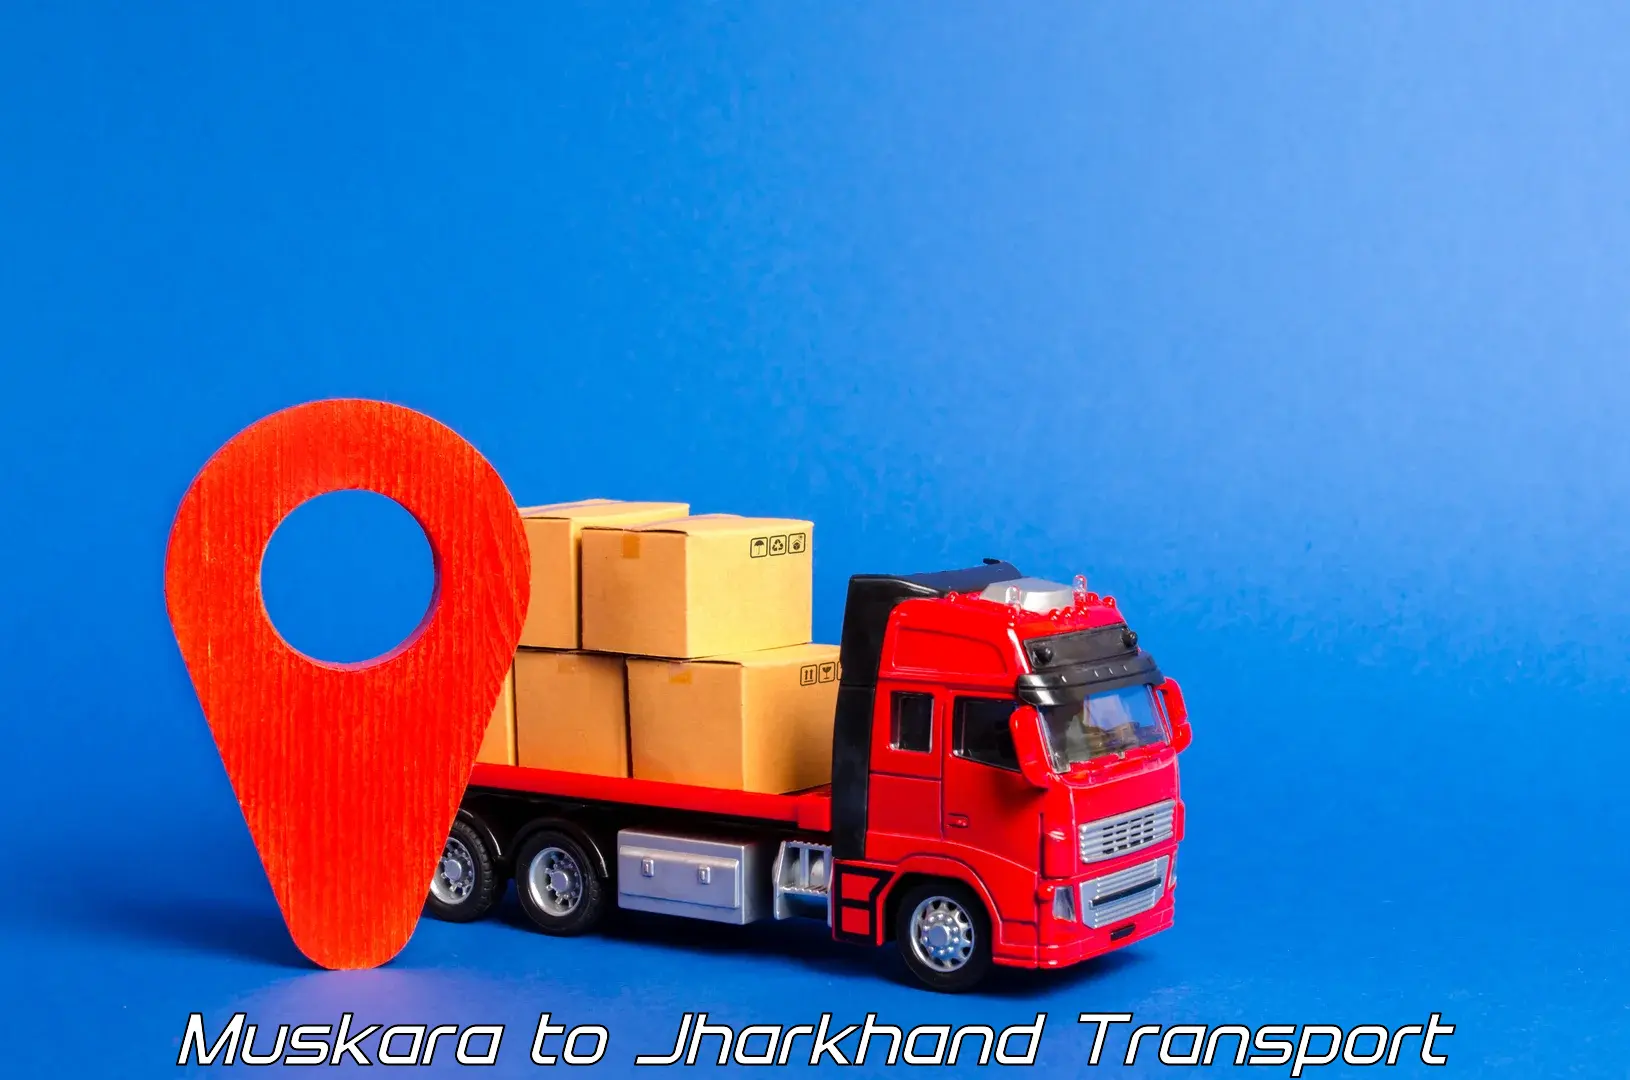 Commercial transport service Muskara to Koderma